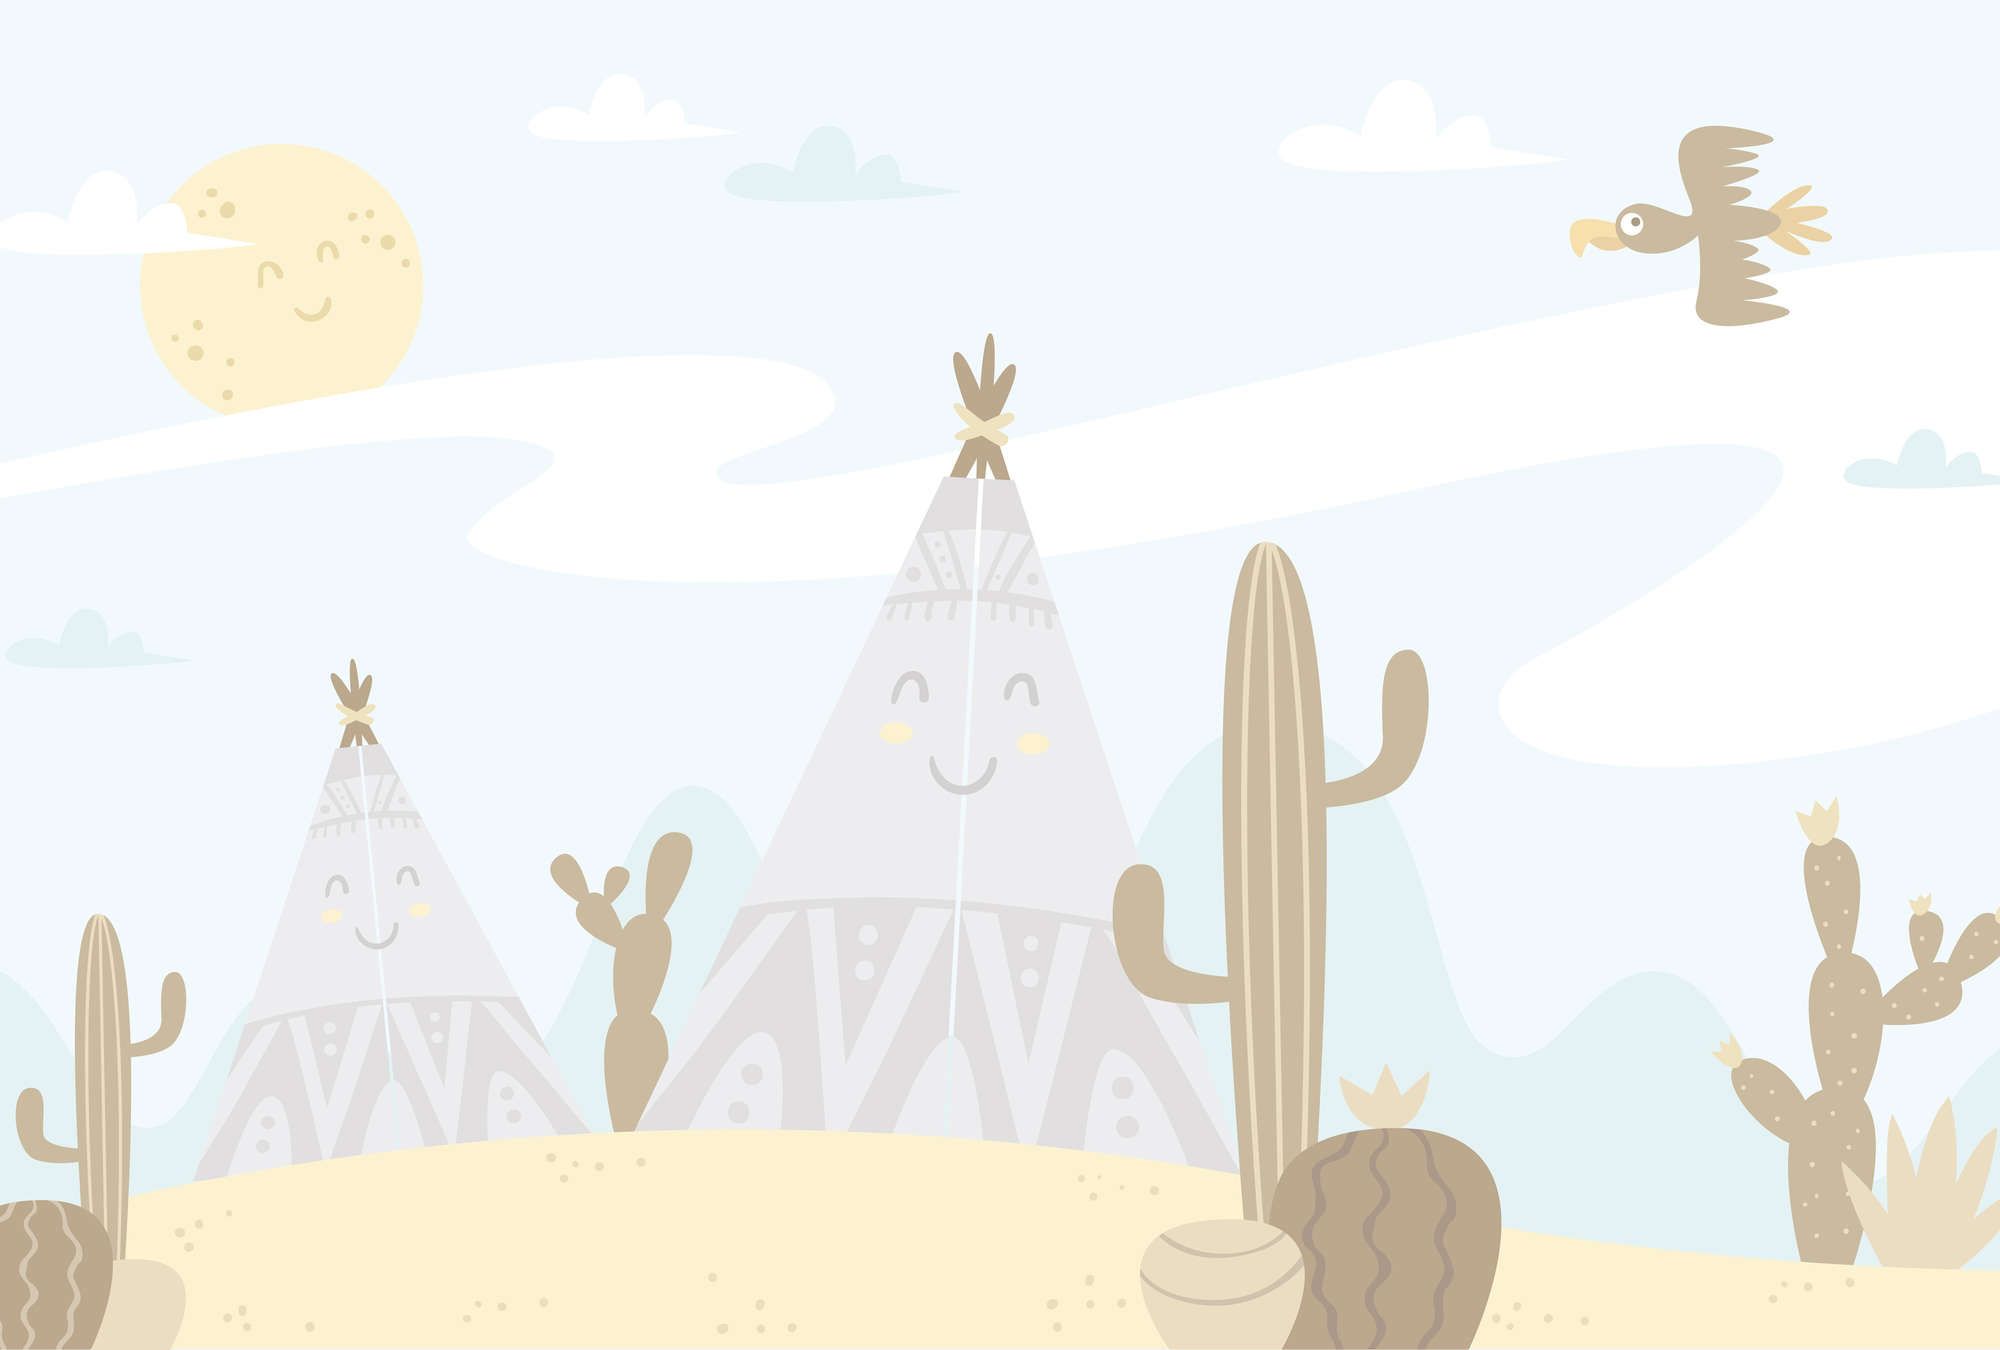             Fototapete Wüstenlandschaft mit Tipis – Glattes & perlmutt-schimmerndes Vlies
        